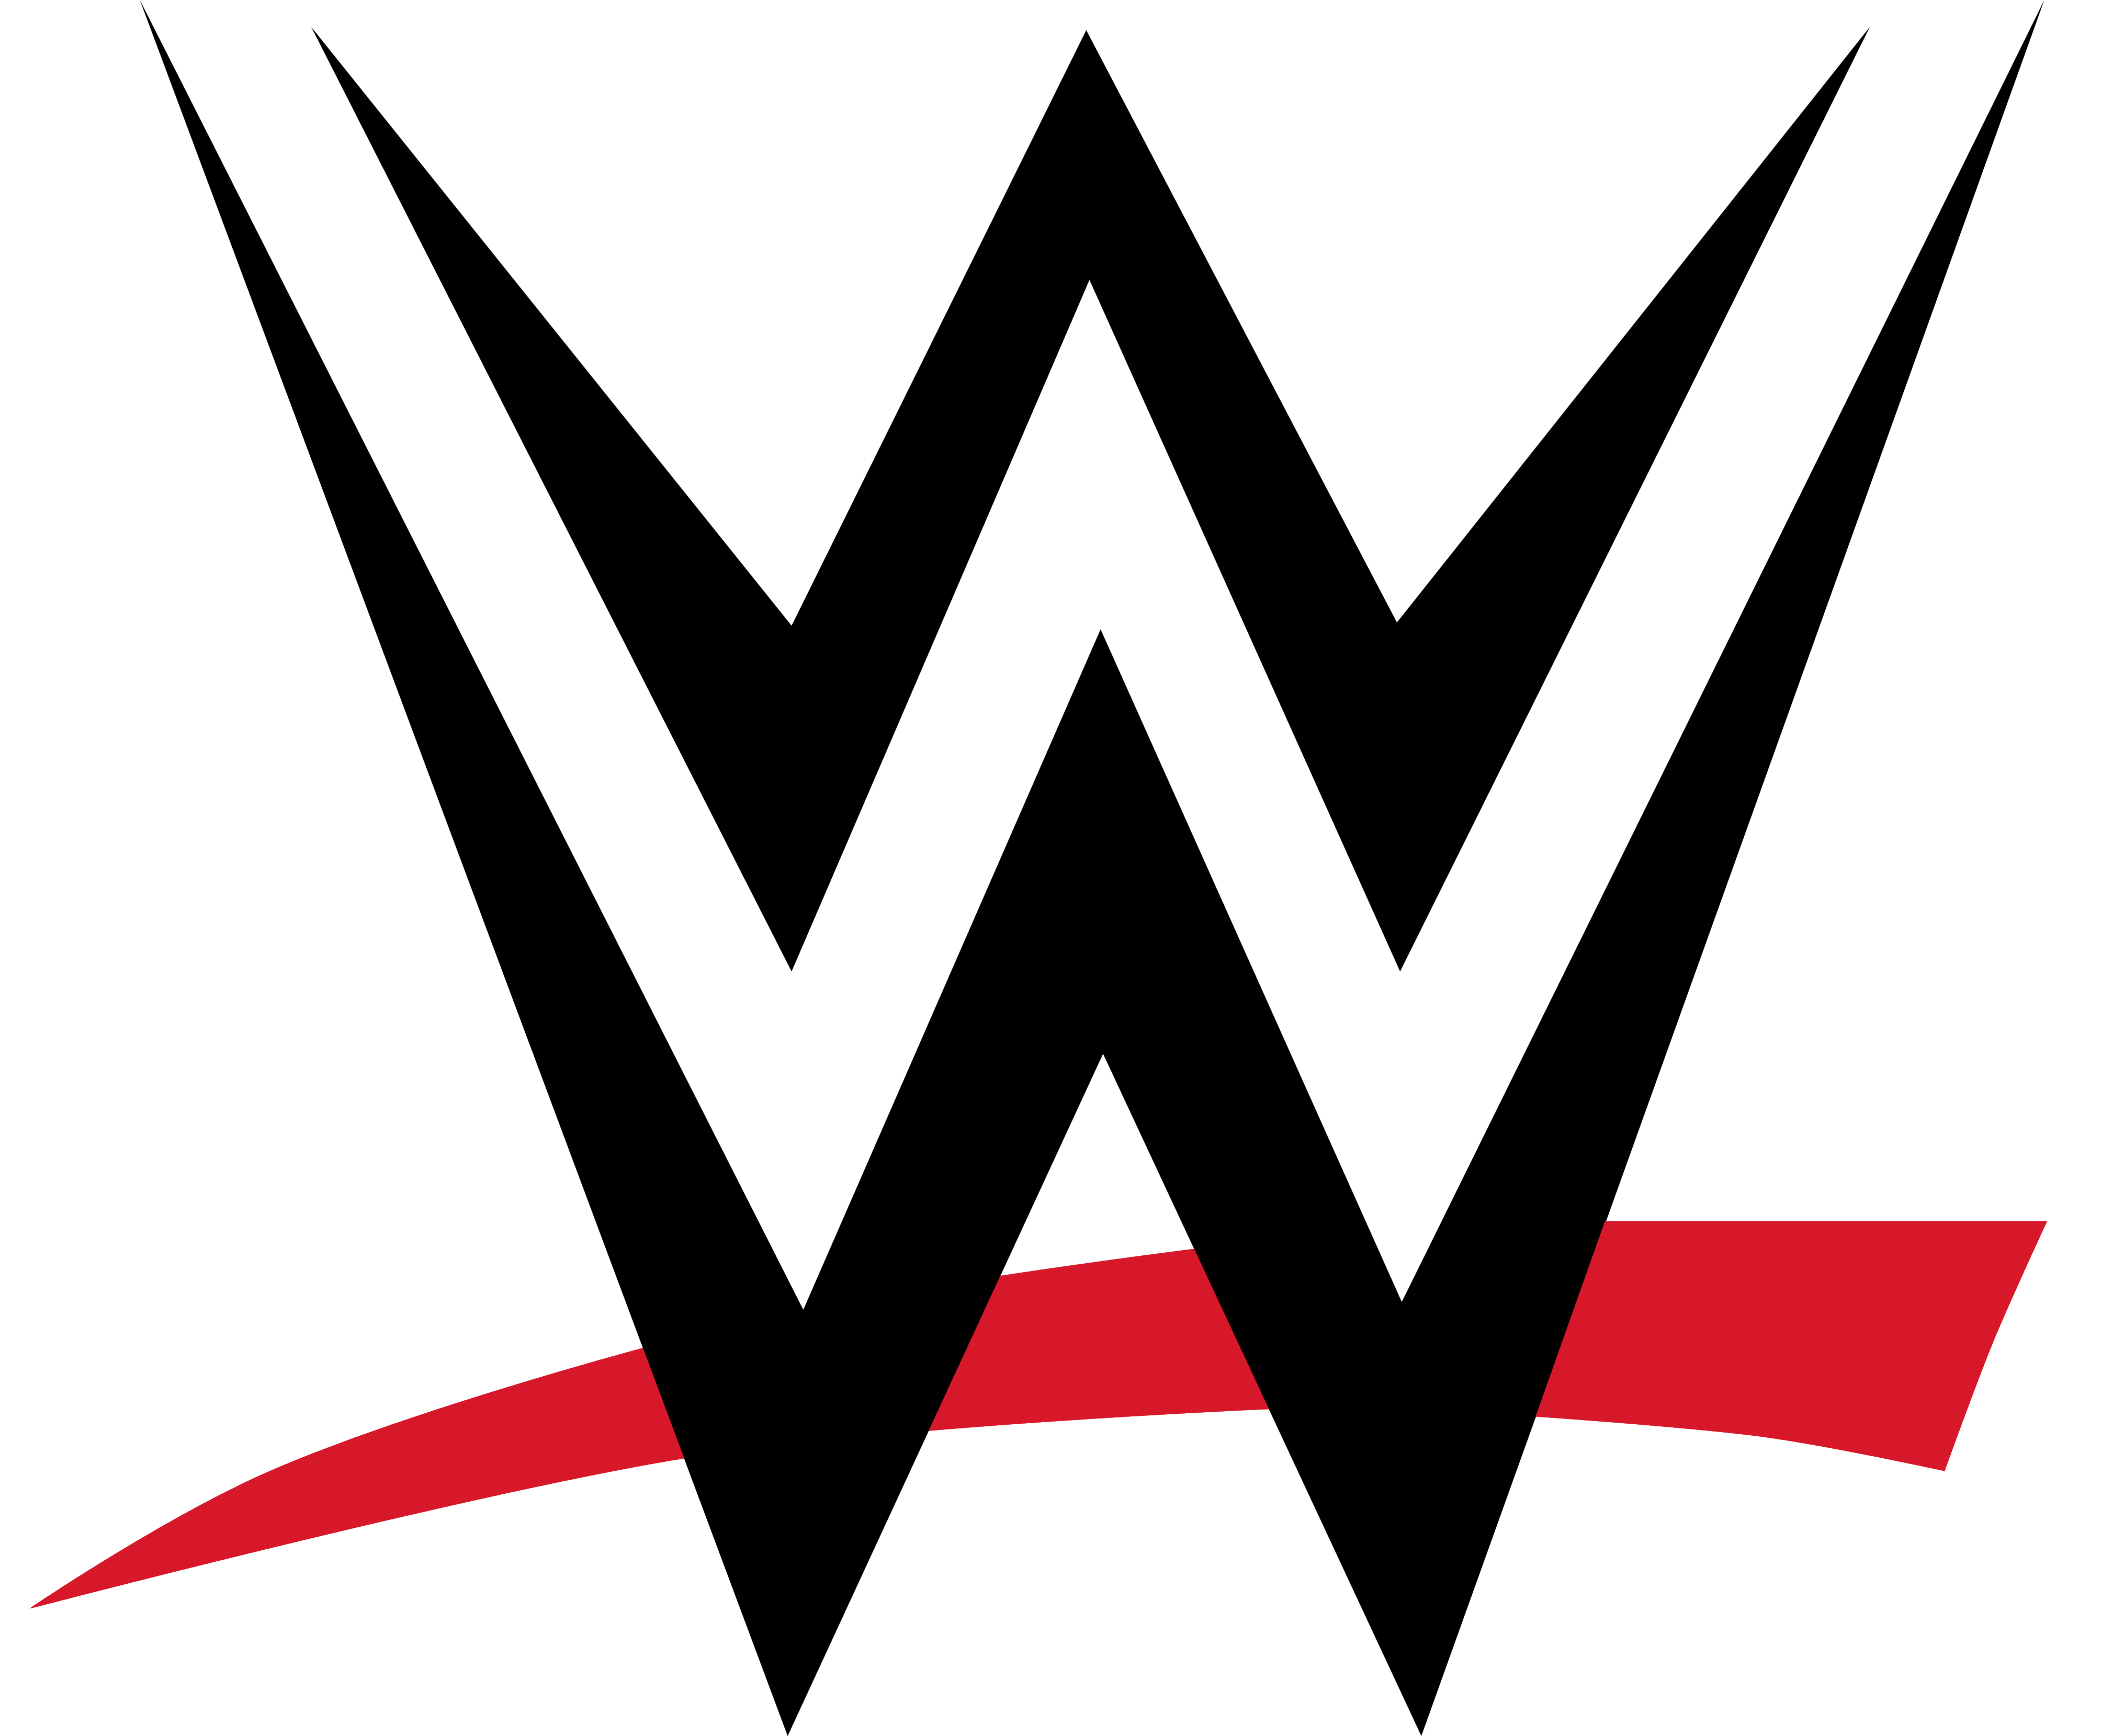 WWE logo, logotype